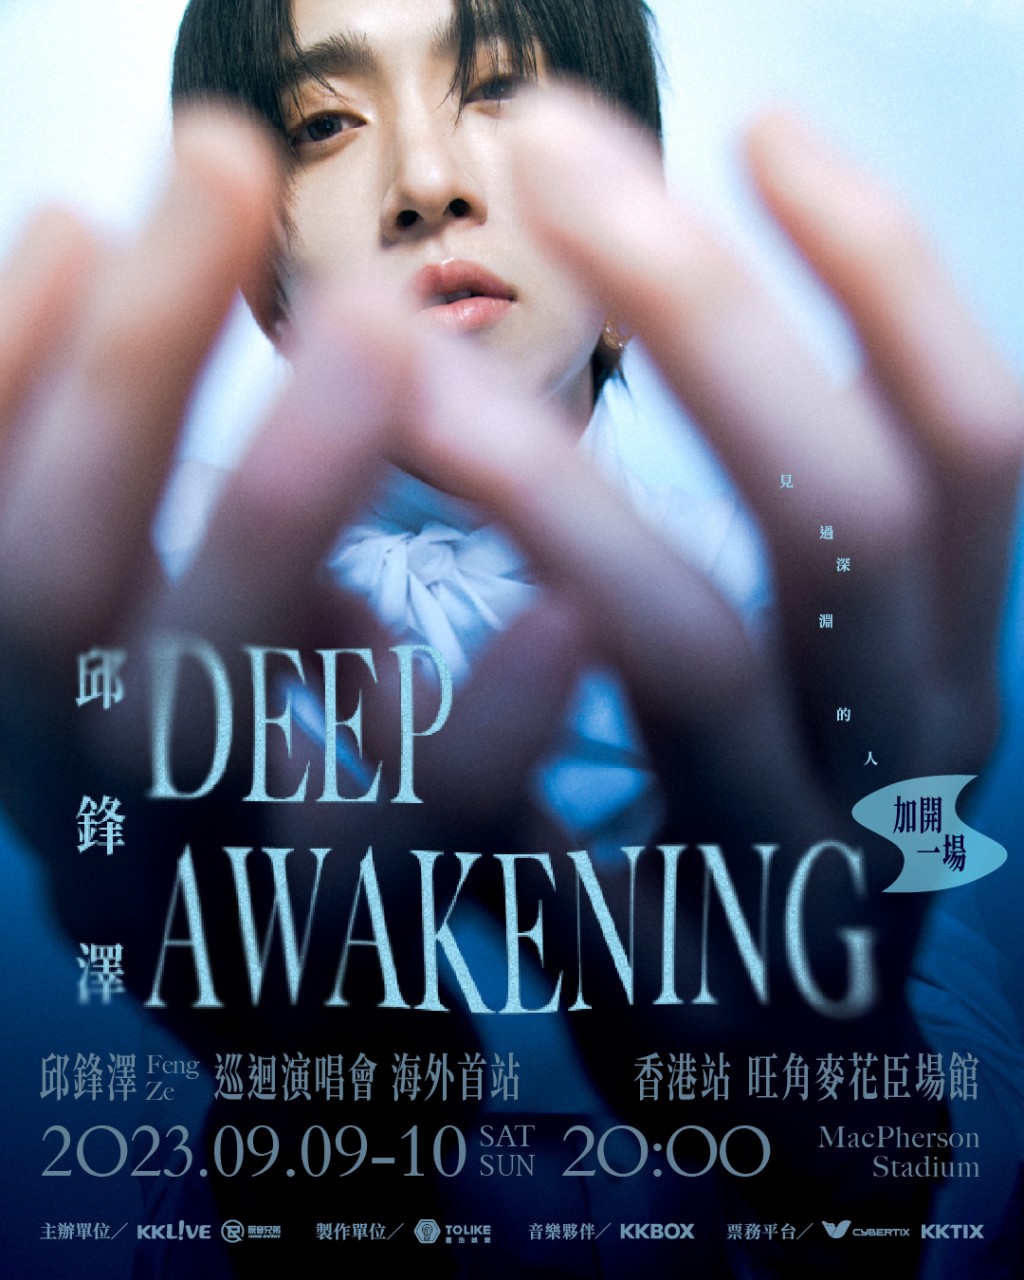 邱锋泽DEEP AWAKENING 巡回演唱会2023香港站